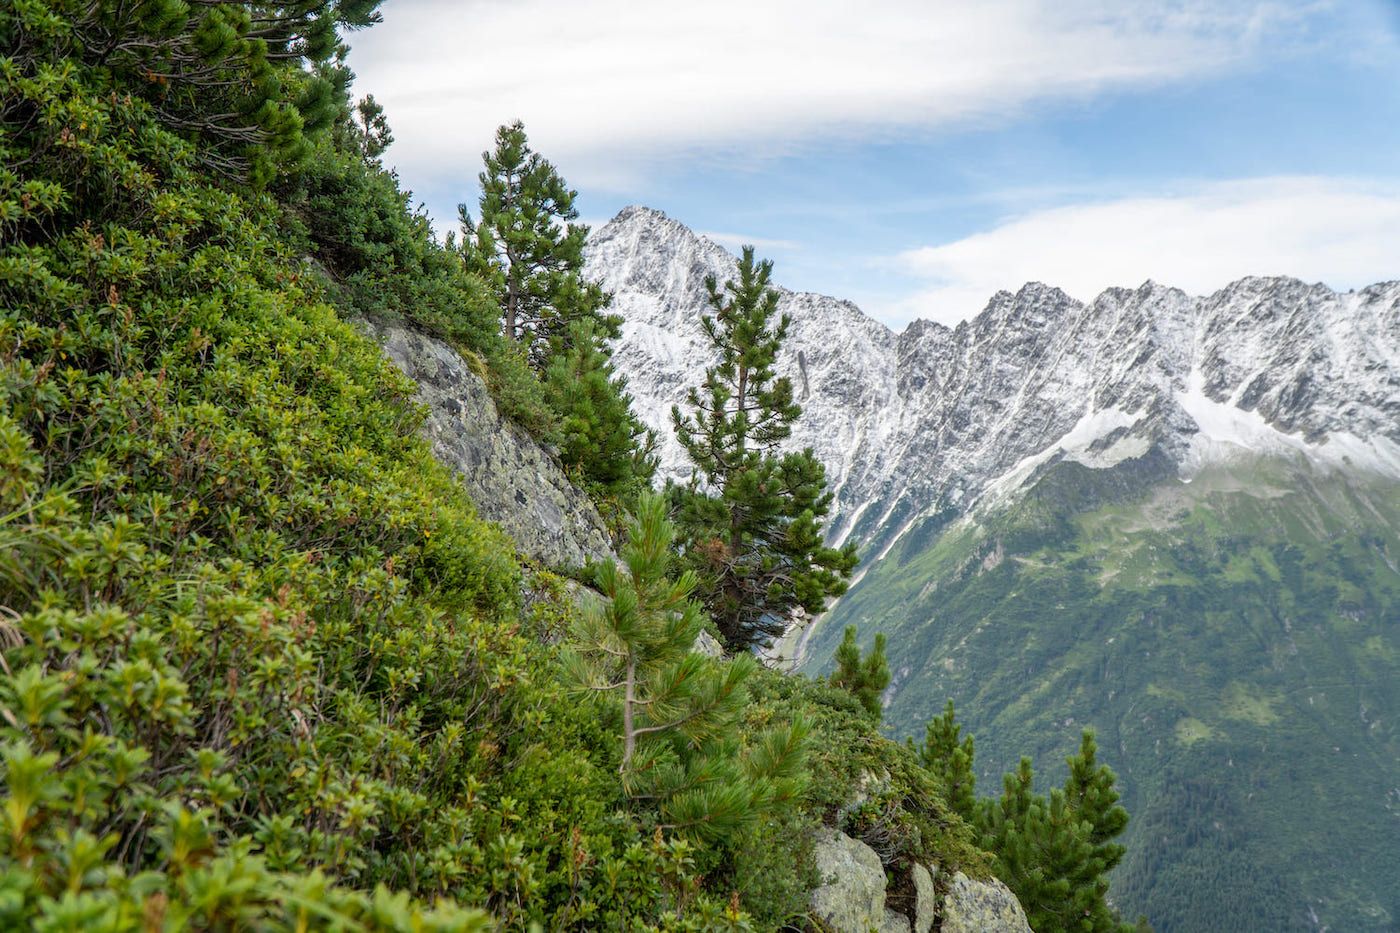 Arolière (peuplement d'aroles, ou pin des Alpes) dans les Alpes suisses